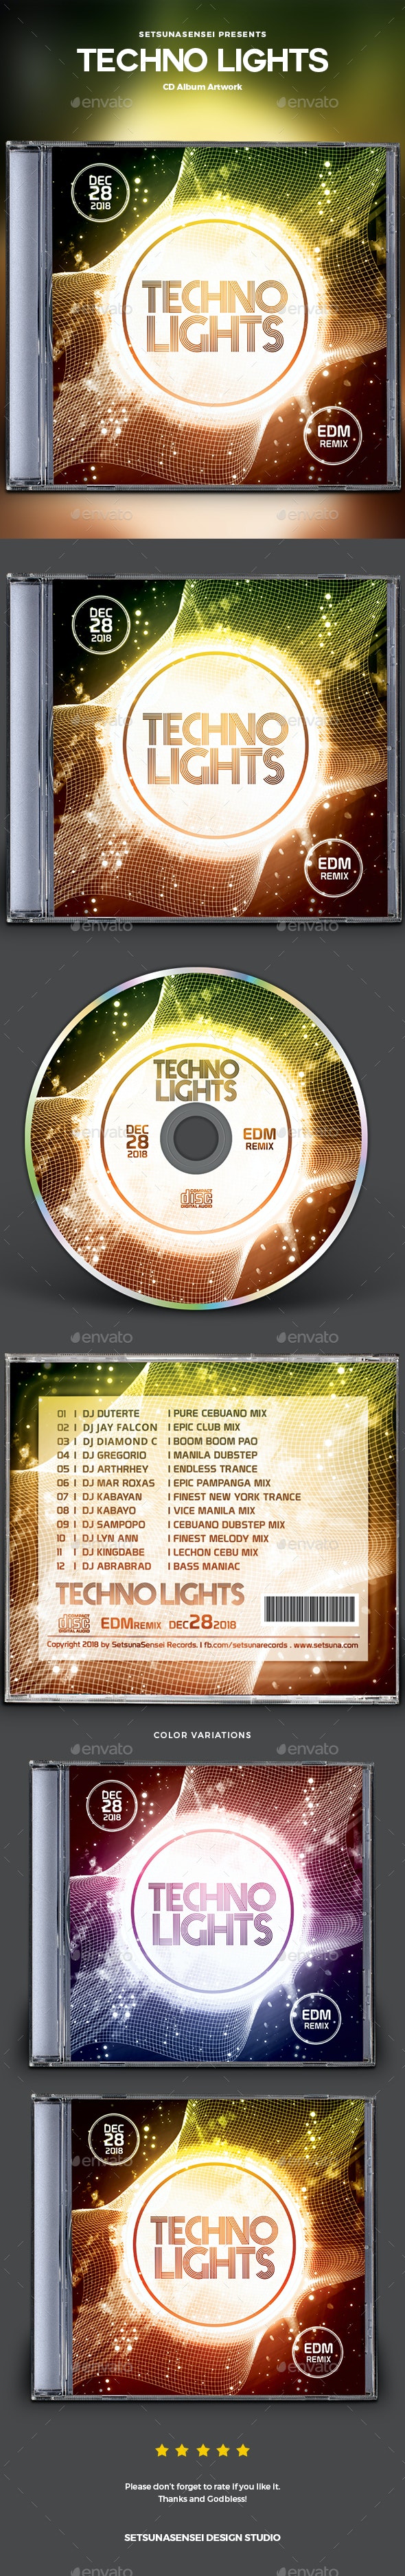 فایل لایه باز کاور سی دی Techno Lights CD Album Artwork